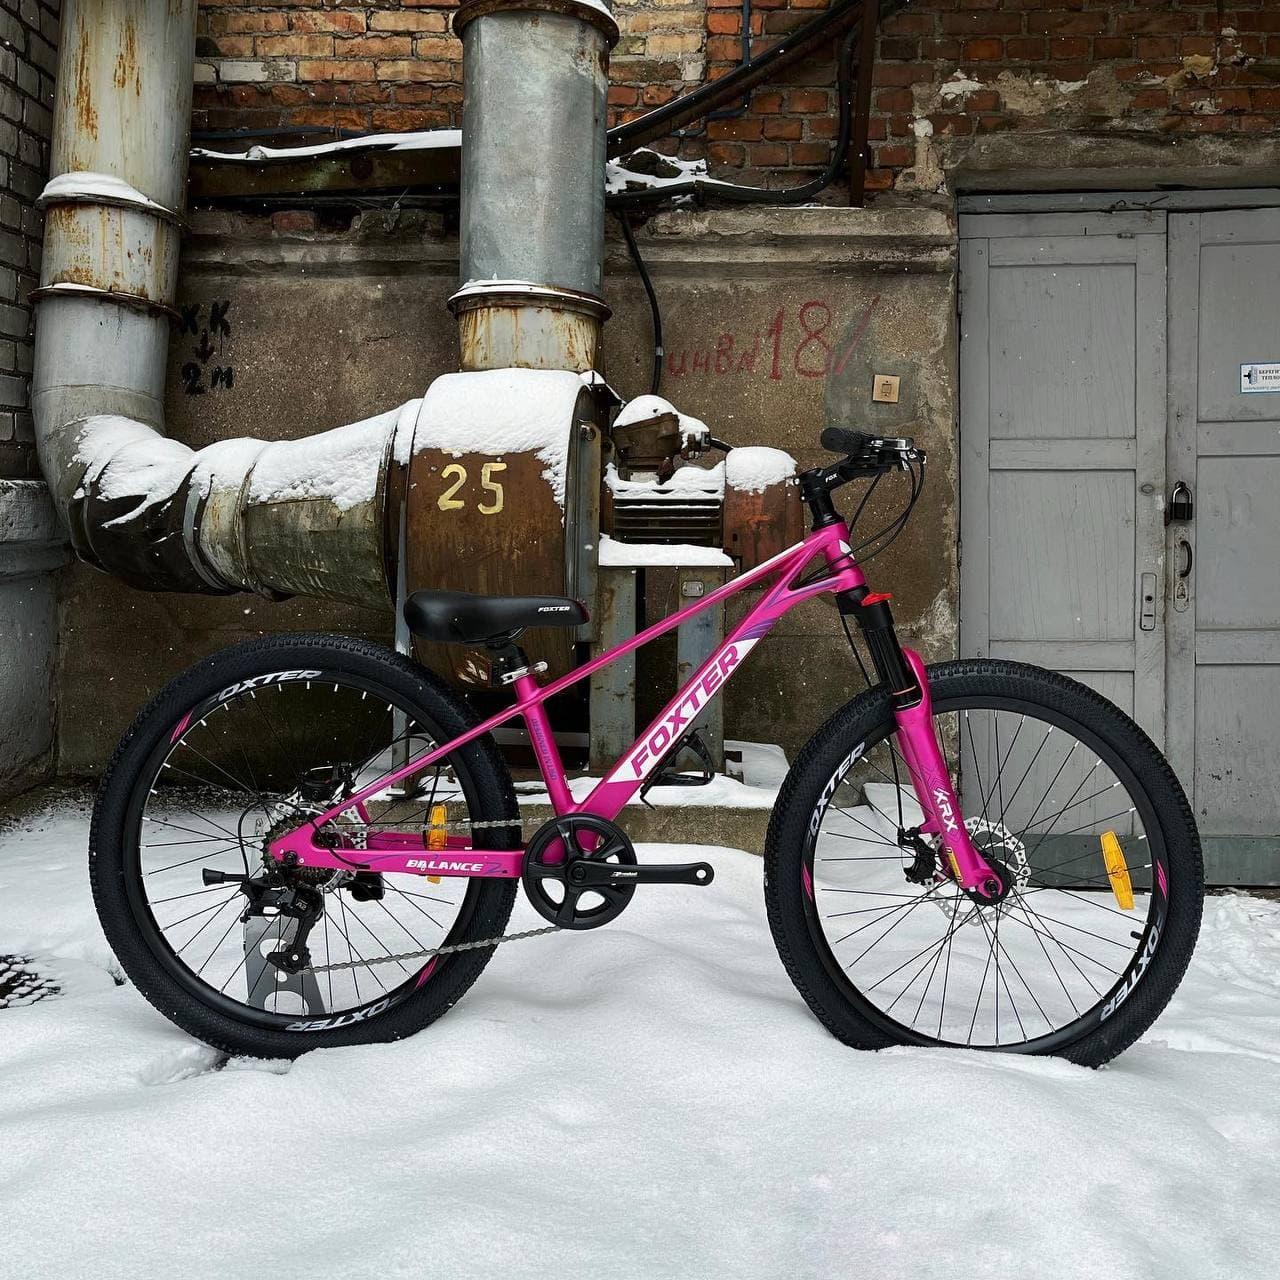 Велосипед Foxter Balance 2.1 розовый